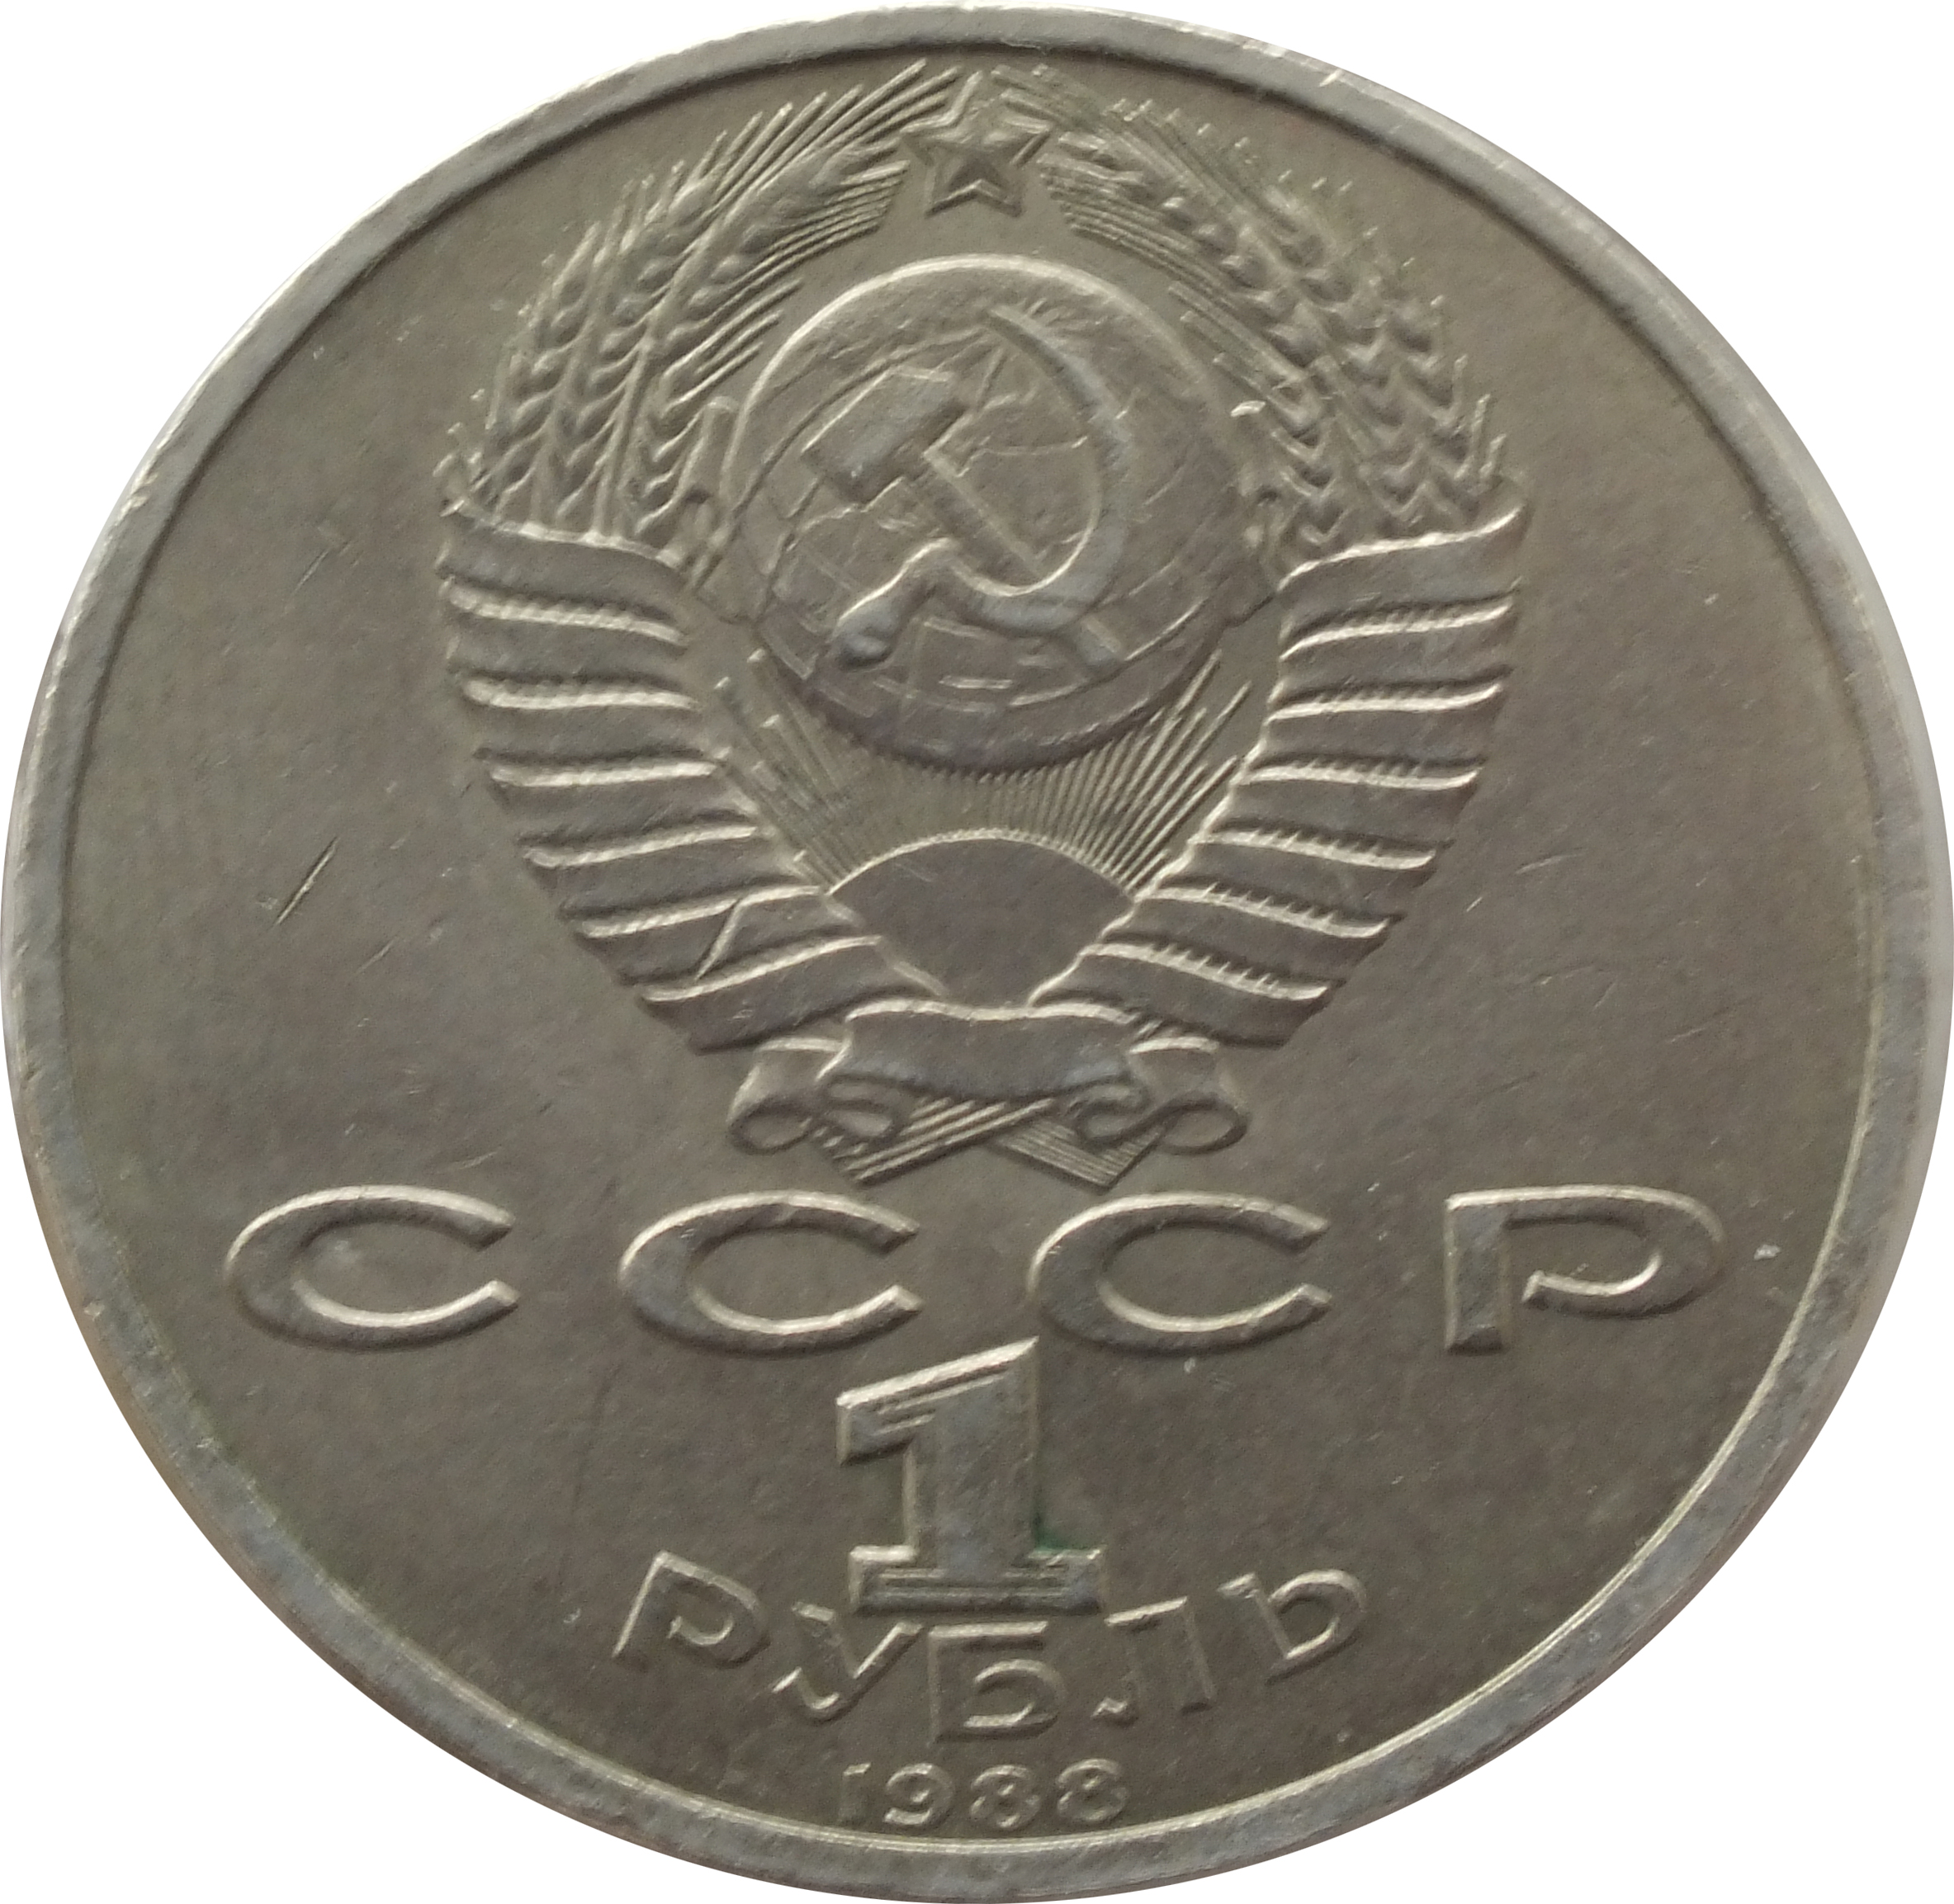 1 рубль в 80 е. Монета 1 рубль 1990 года. Монета 1 рубль СССР. Советские юбилейные монеты. Советские металлические монеты.